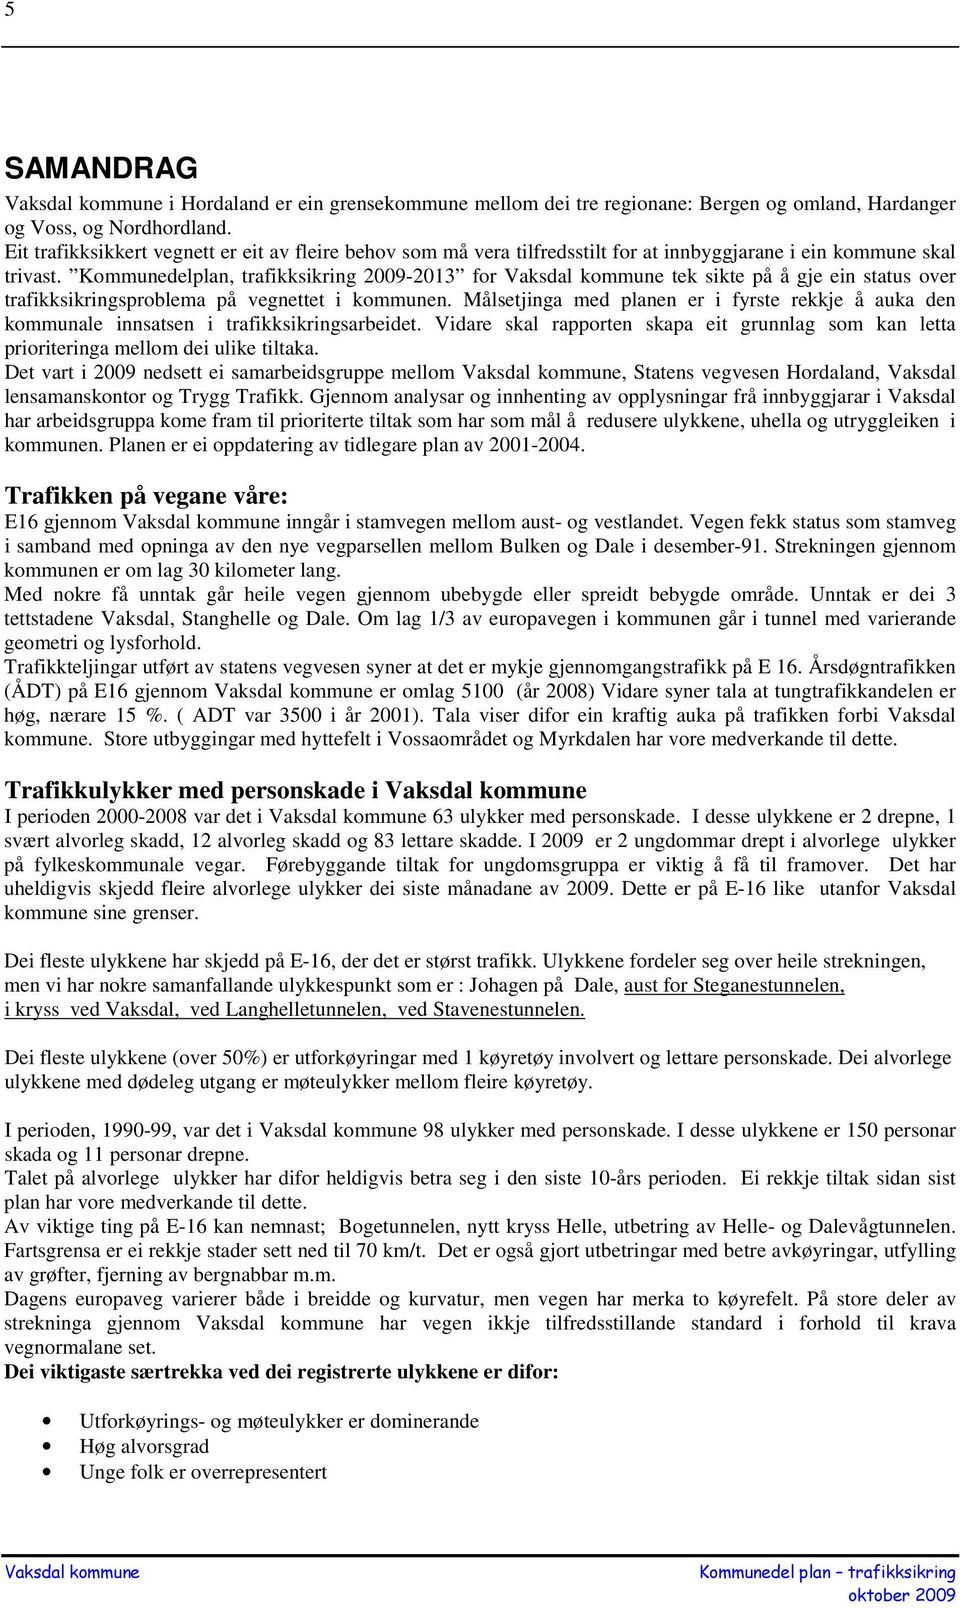 Kommunedelplan, trafikksikring 2009-2013 for tek sikte på å gje ein status over trafikksikringsproblema på vegnettet i kommunen.